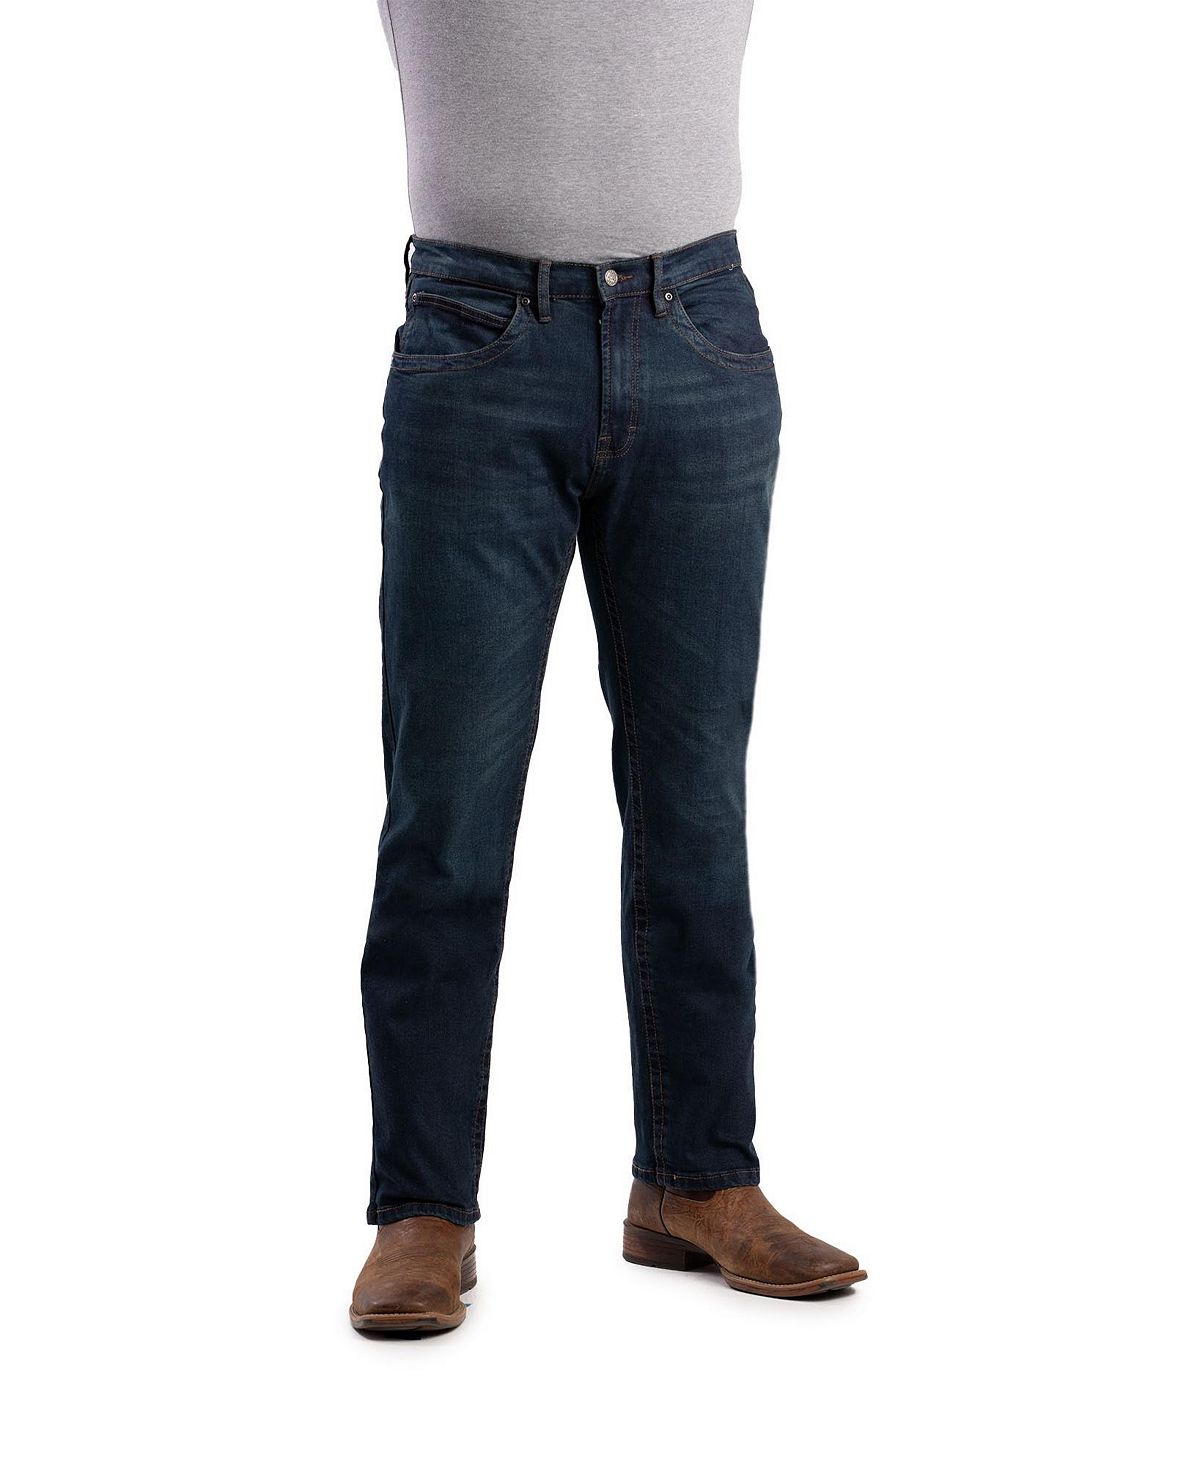 Мужские джинсы Highland Flex Fit прямого кроя Berne джинсы мужские straight fit